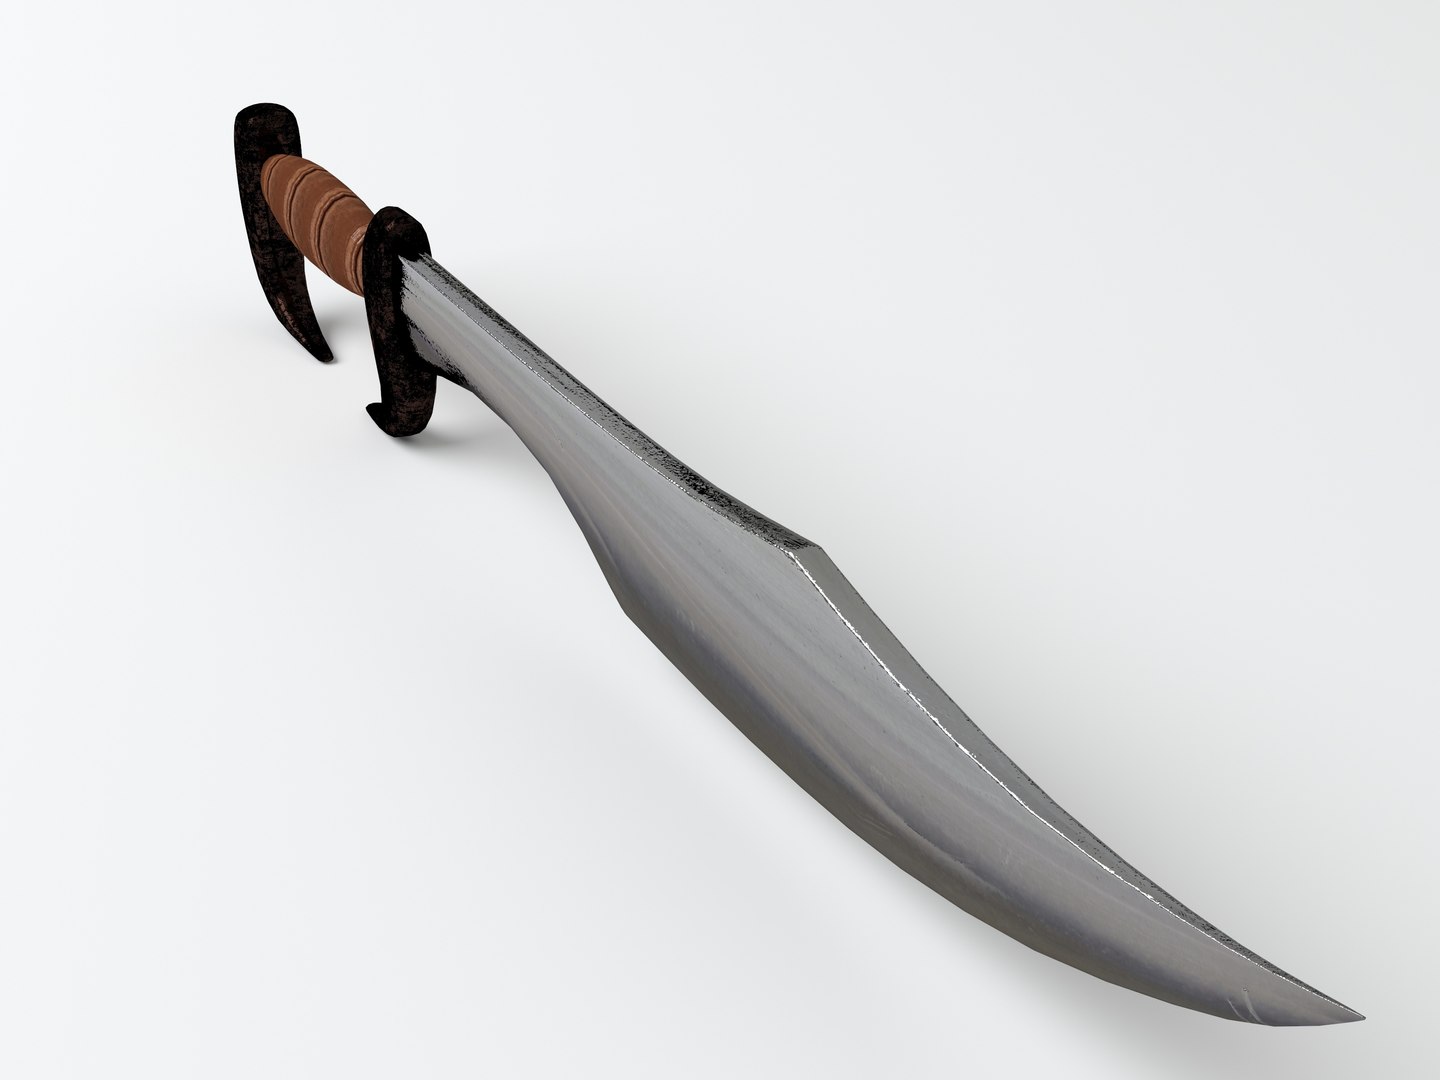 medieval sword 2 3d model